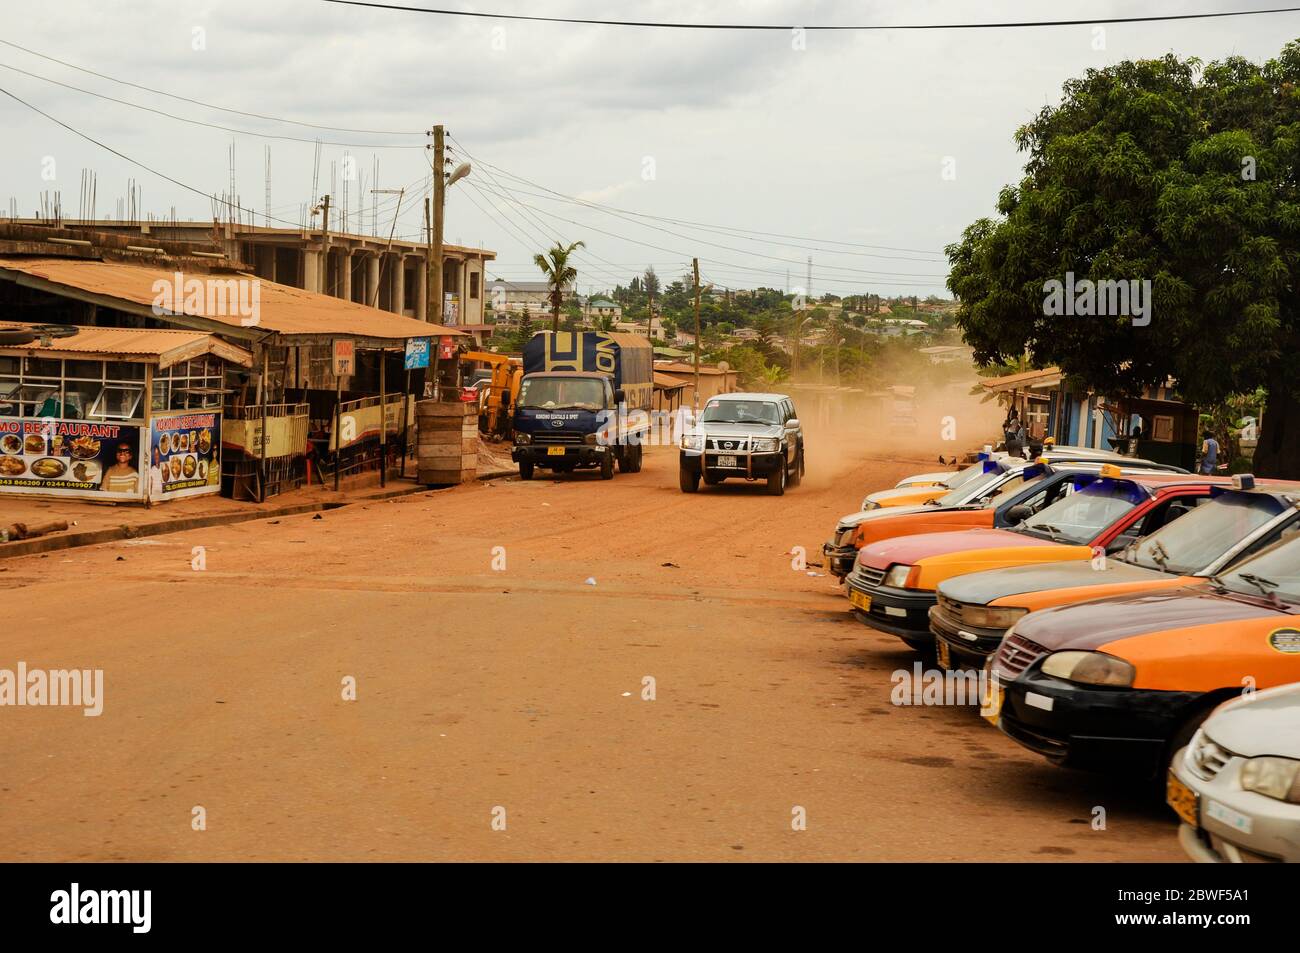 Una strada sterrata e ghiaiosa che attraversa un povero villaggio africano - Accra, Ghana, Africa Foto Stock